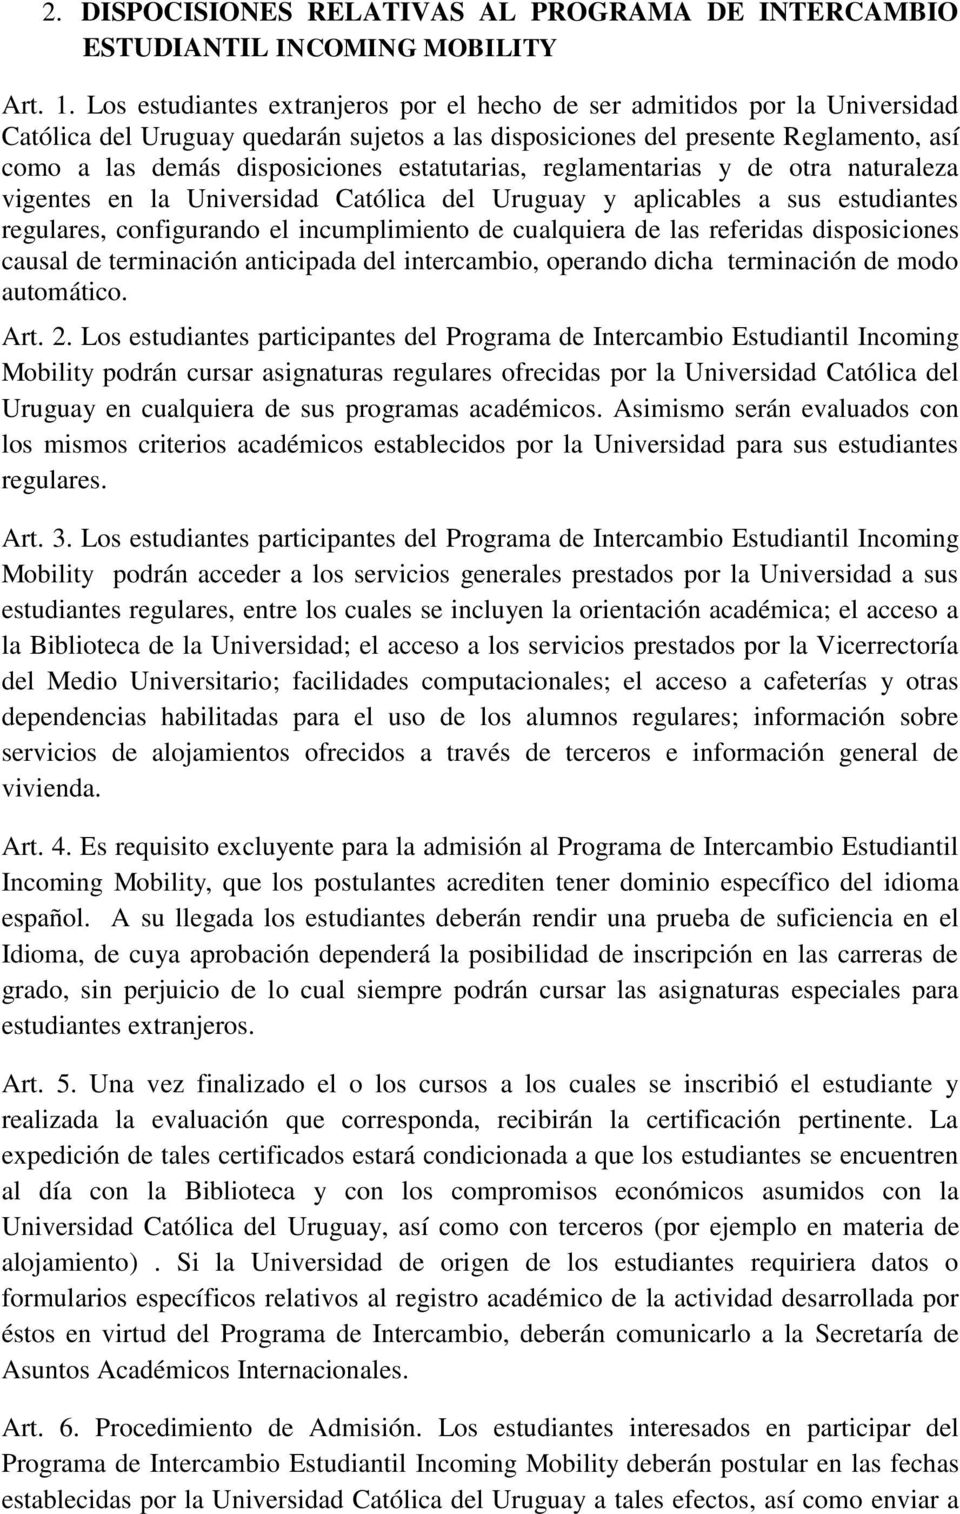 estatutarias, reglamentarias y de otra naturaleza vigentes en la Universidad Católica del Uruguay y aplicables a sus estudiantes regulares, configurando el incumplimiento de cualquiera de las